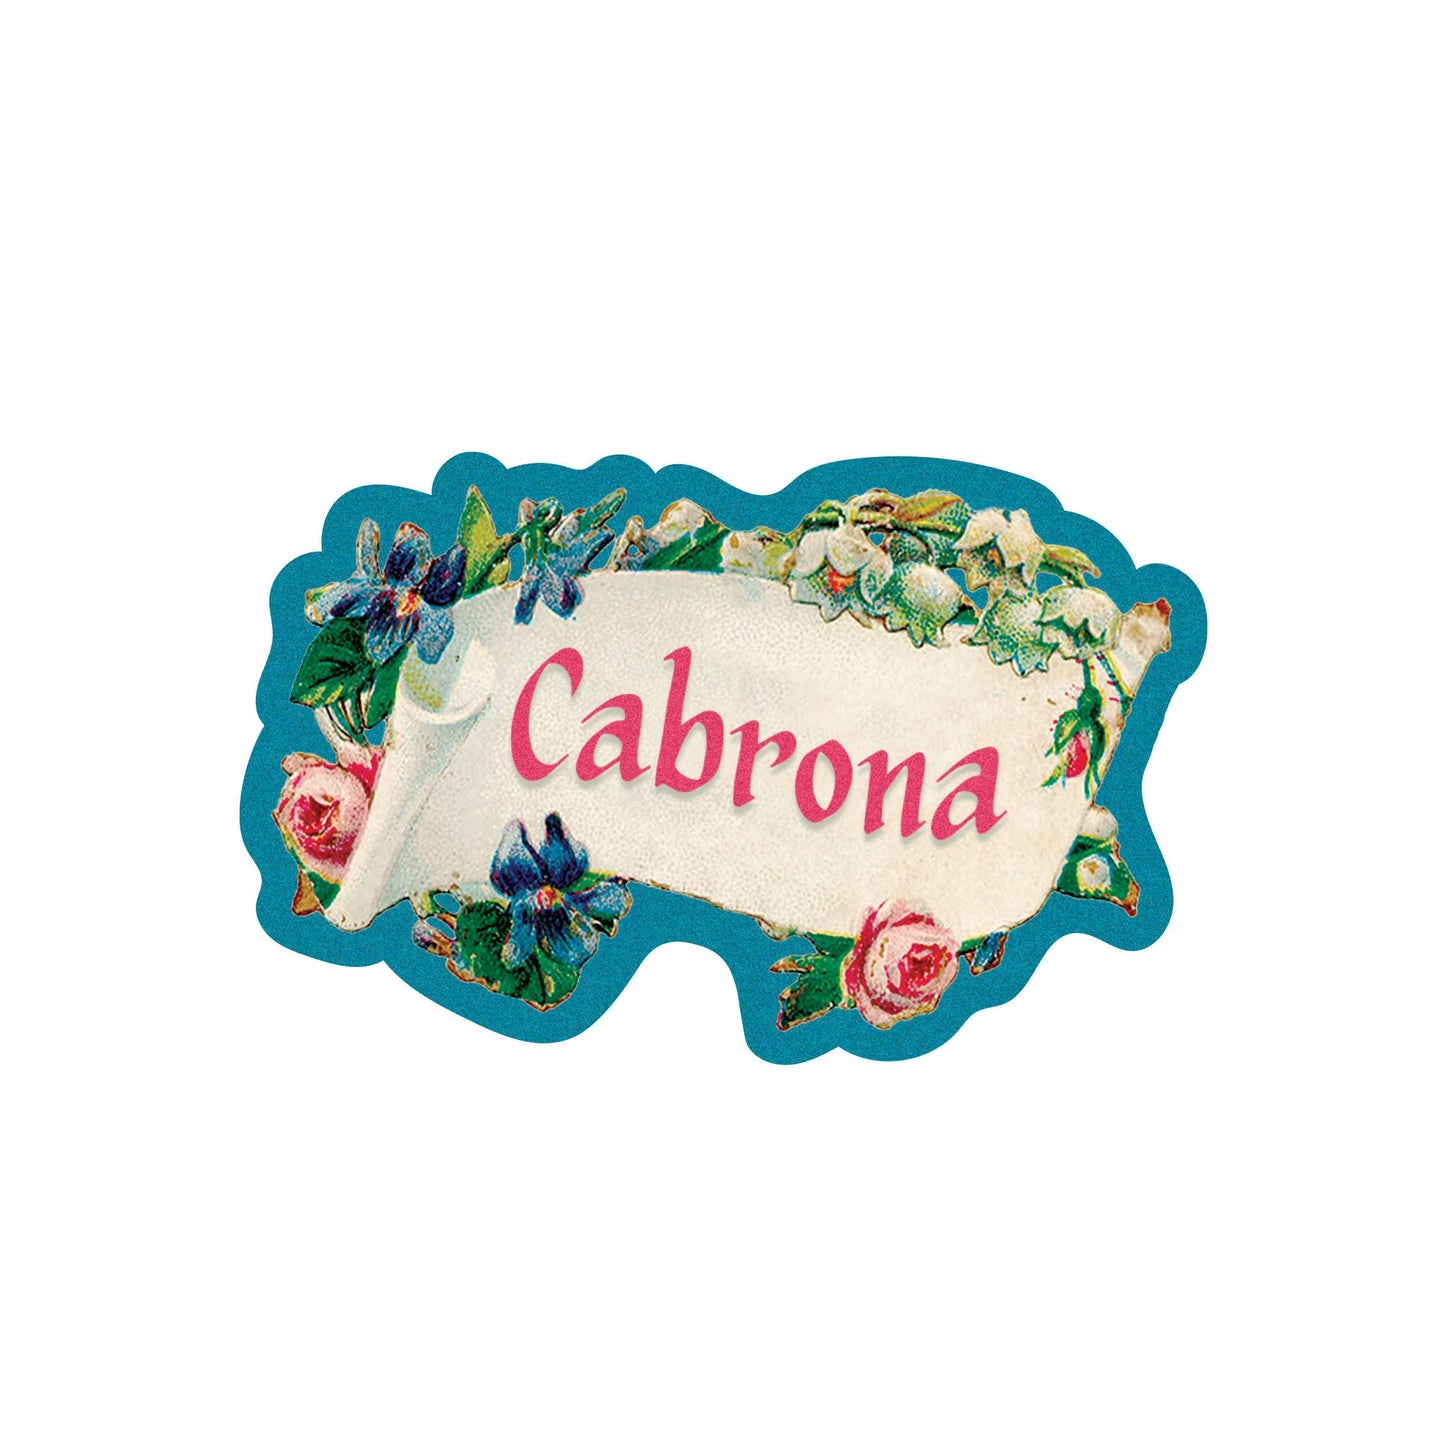 Cabrona Vintage Vinyl Sticker